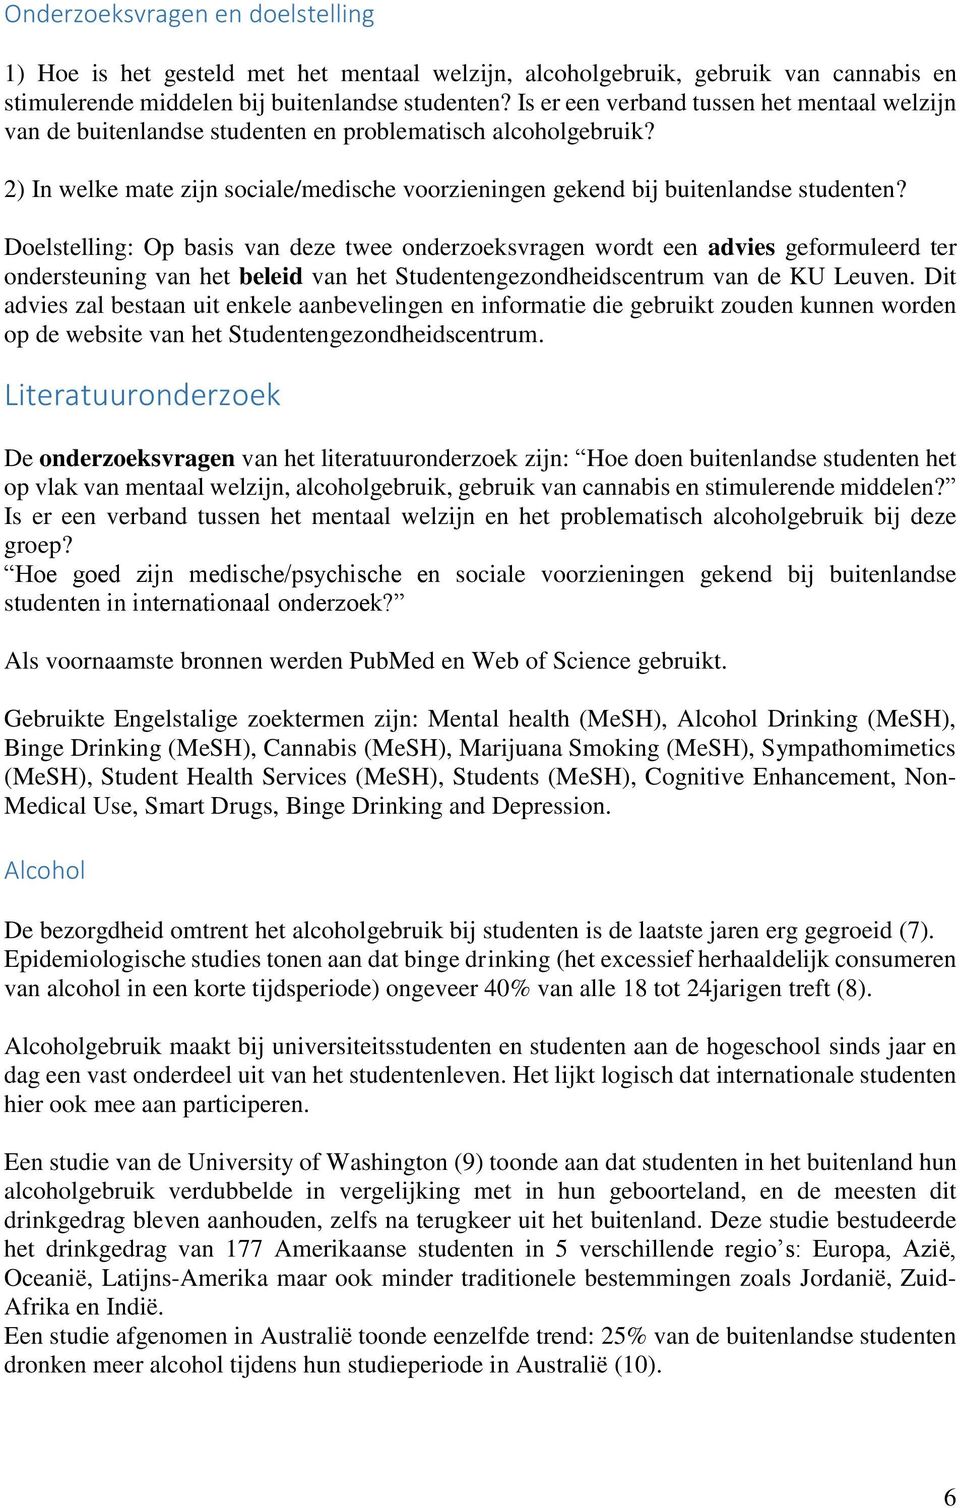 Doelstelling: Op basis van deze twee onderzoeksvragen wordt een advies geformuleerd ter ondersteuning van het beleid van het Studentengezondheidscentrum van de KU Leuven.